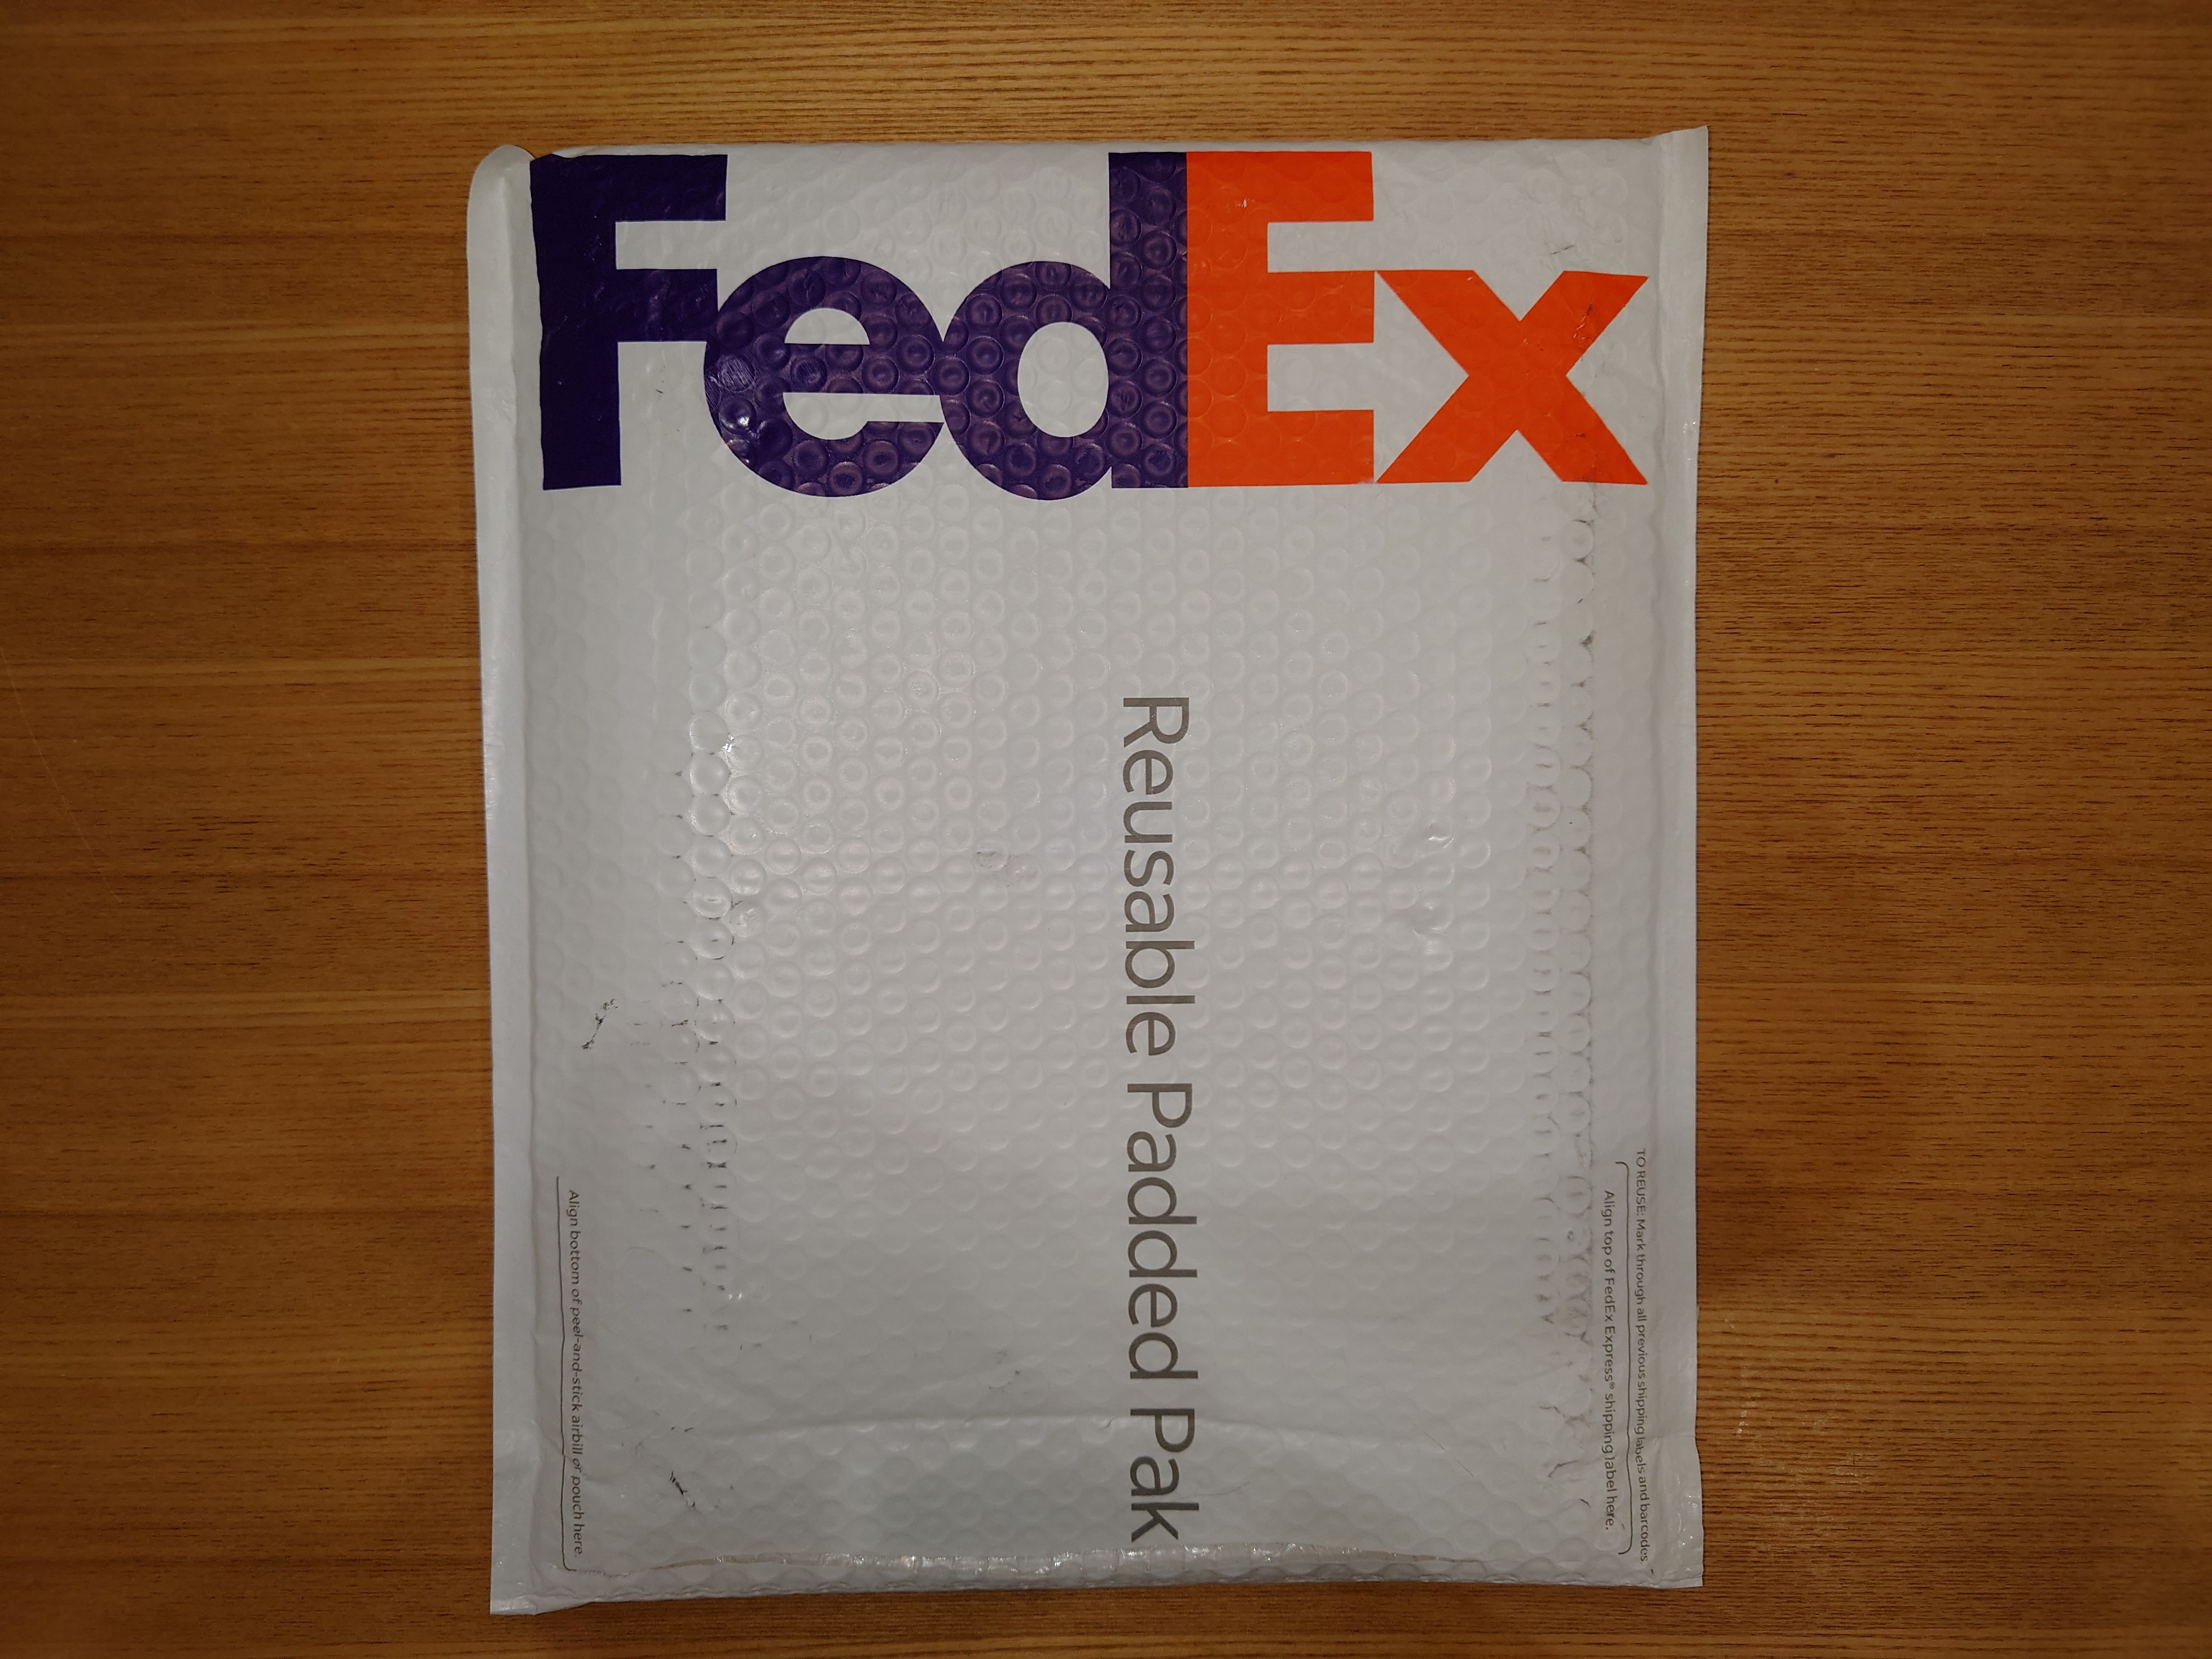 FedEX(フェデックス)の返送方法